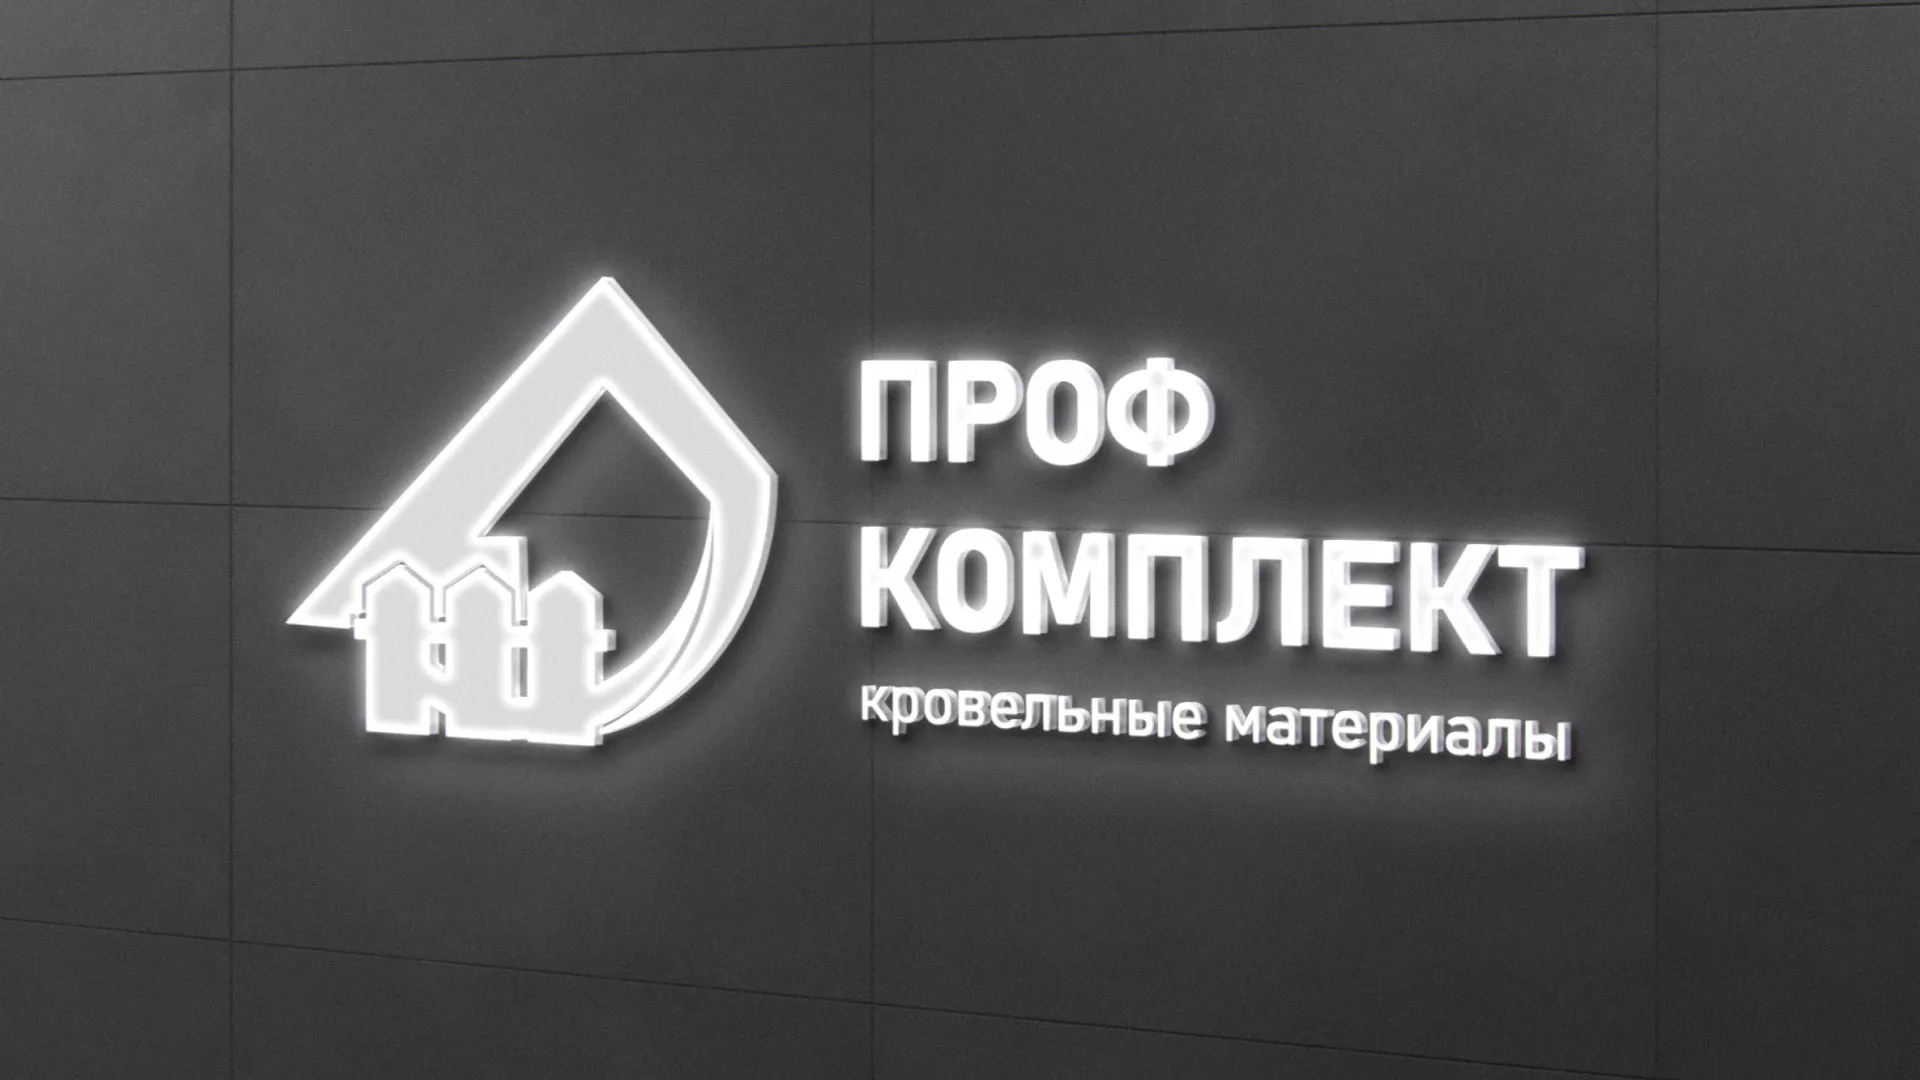 Разработка логотипа «Проф Комплект» в Макарьеве